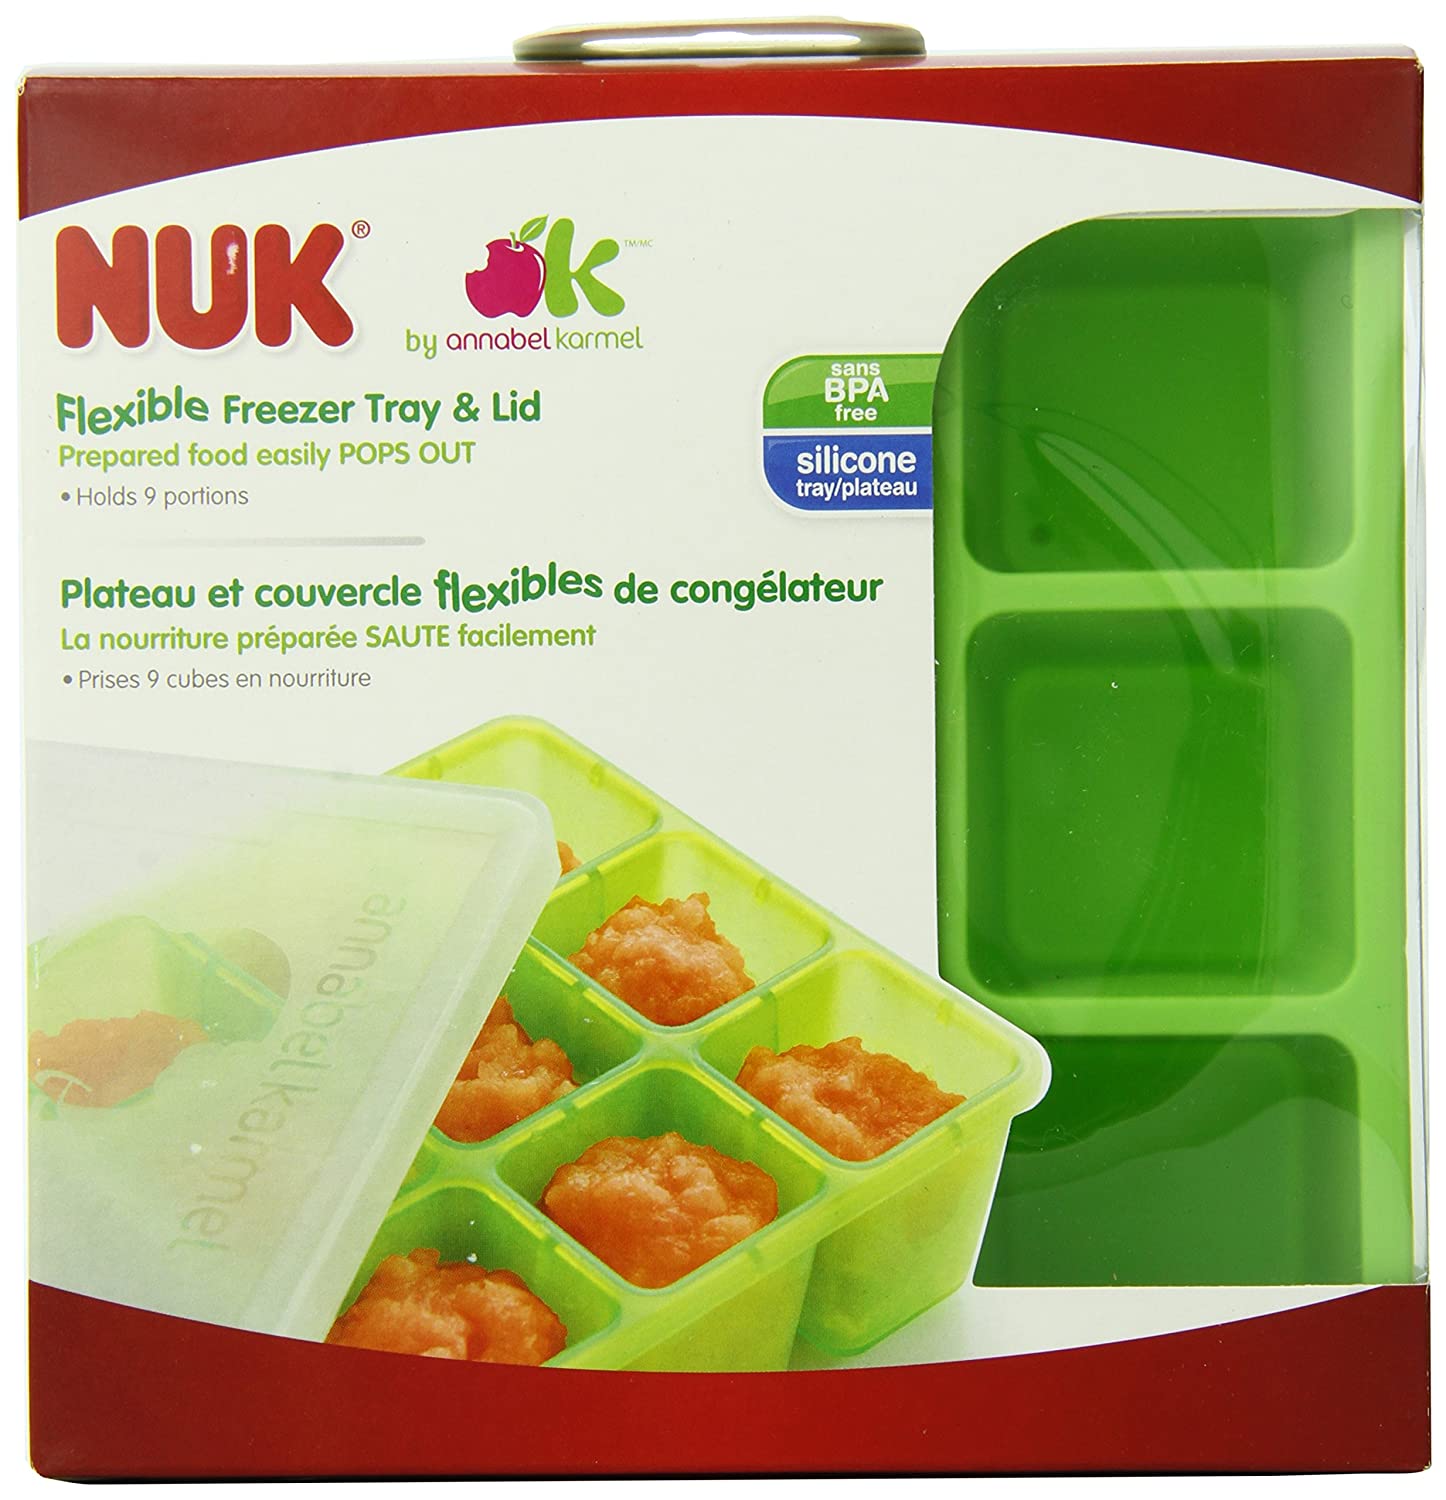 Nuby Garden Fresh Freezer Tray Review